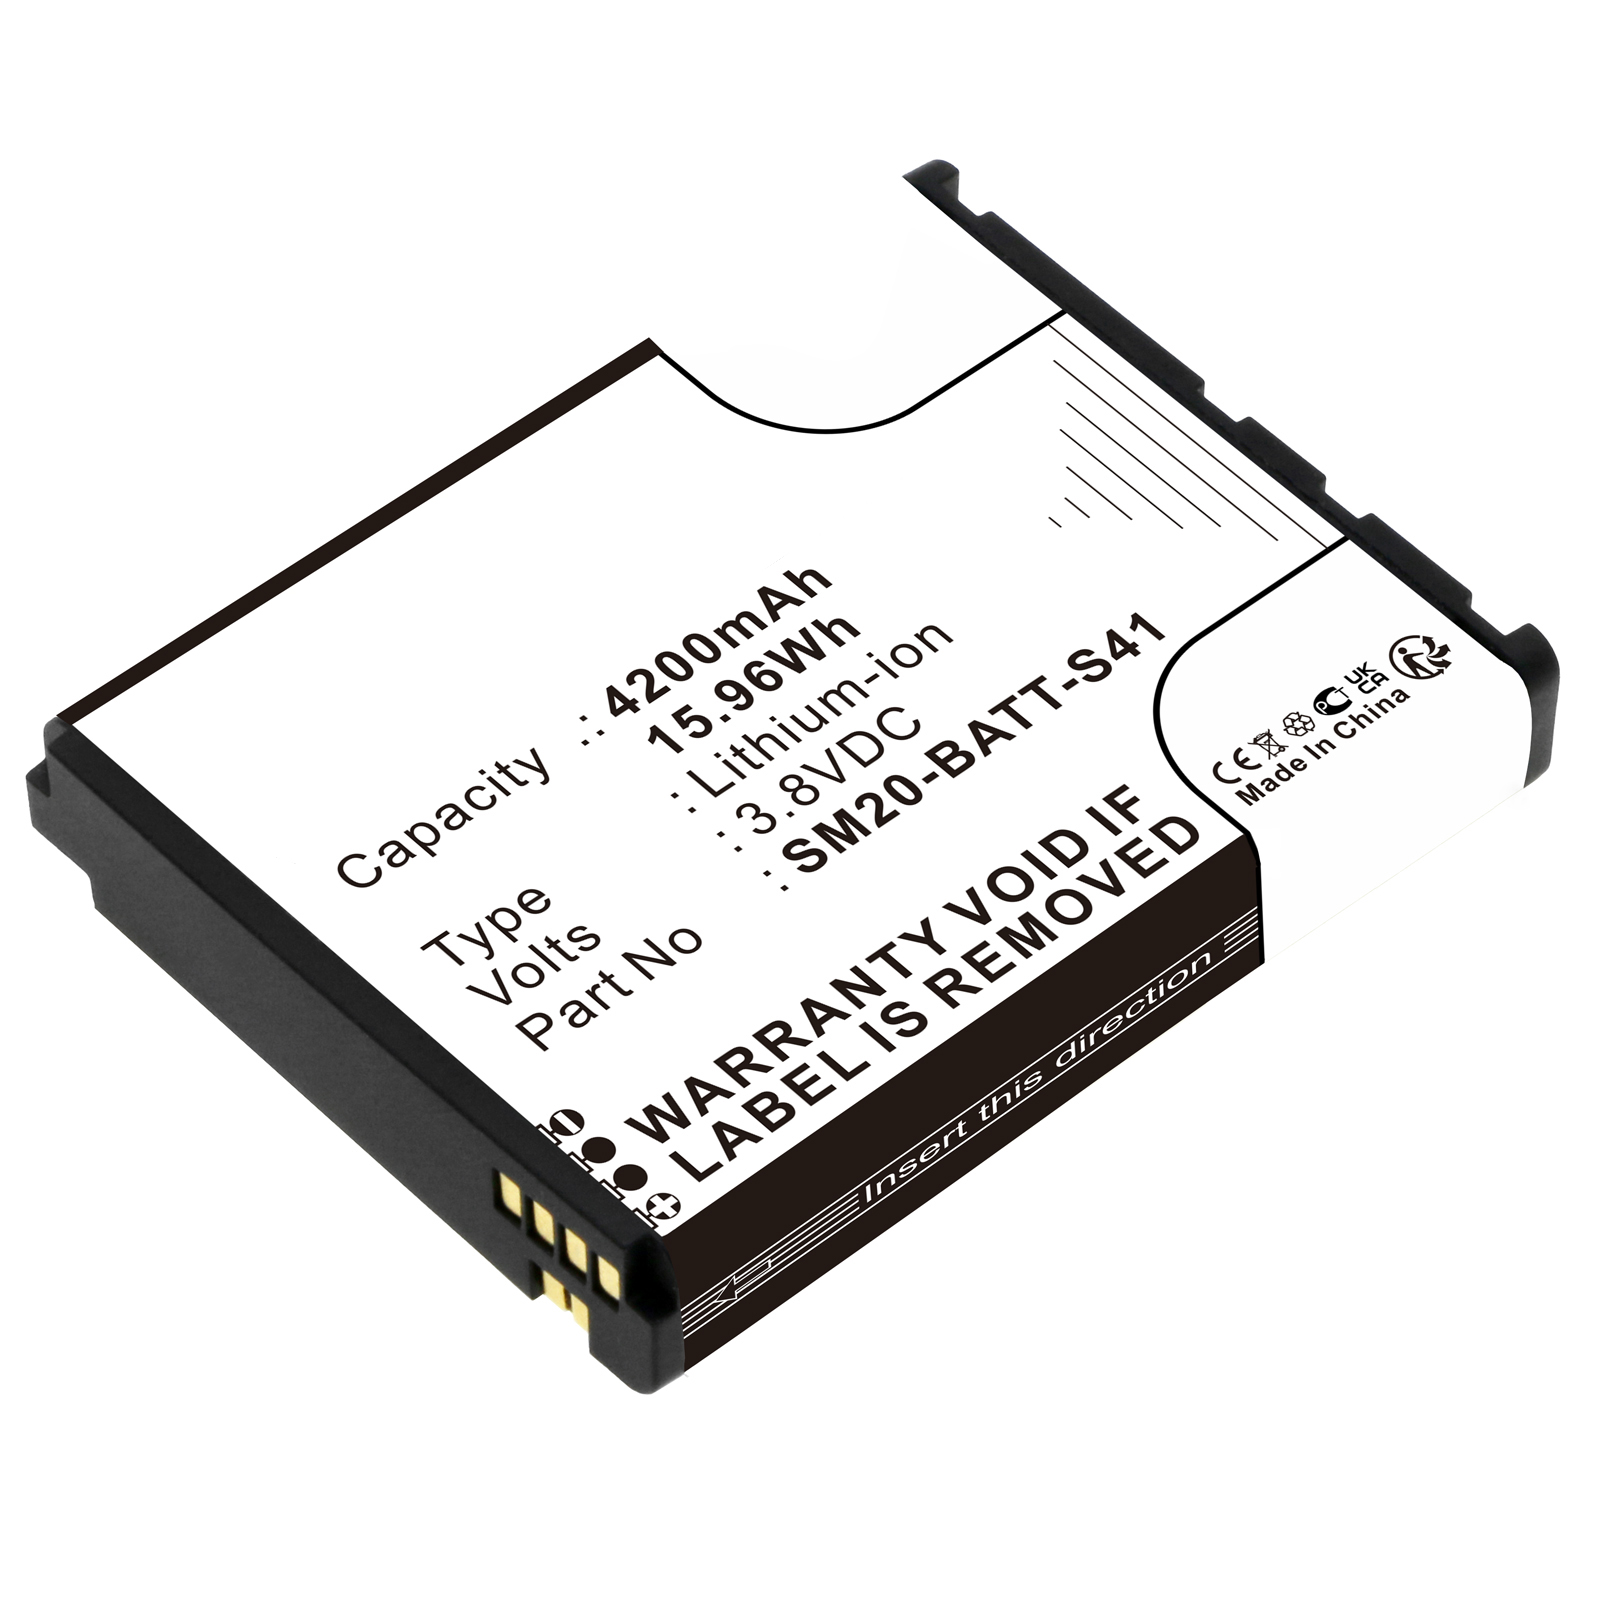 Synergy Digital Barcode Scanner Battery, Compatible with M3 Mobile 02-574-0037 Barcode Scanner Battery (Li-ion, 3.8V, 4200mAh)